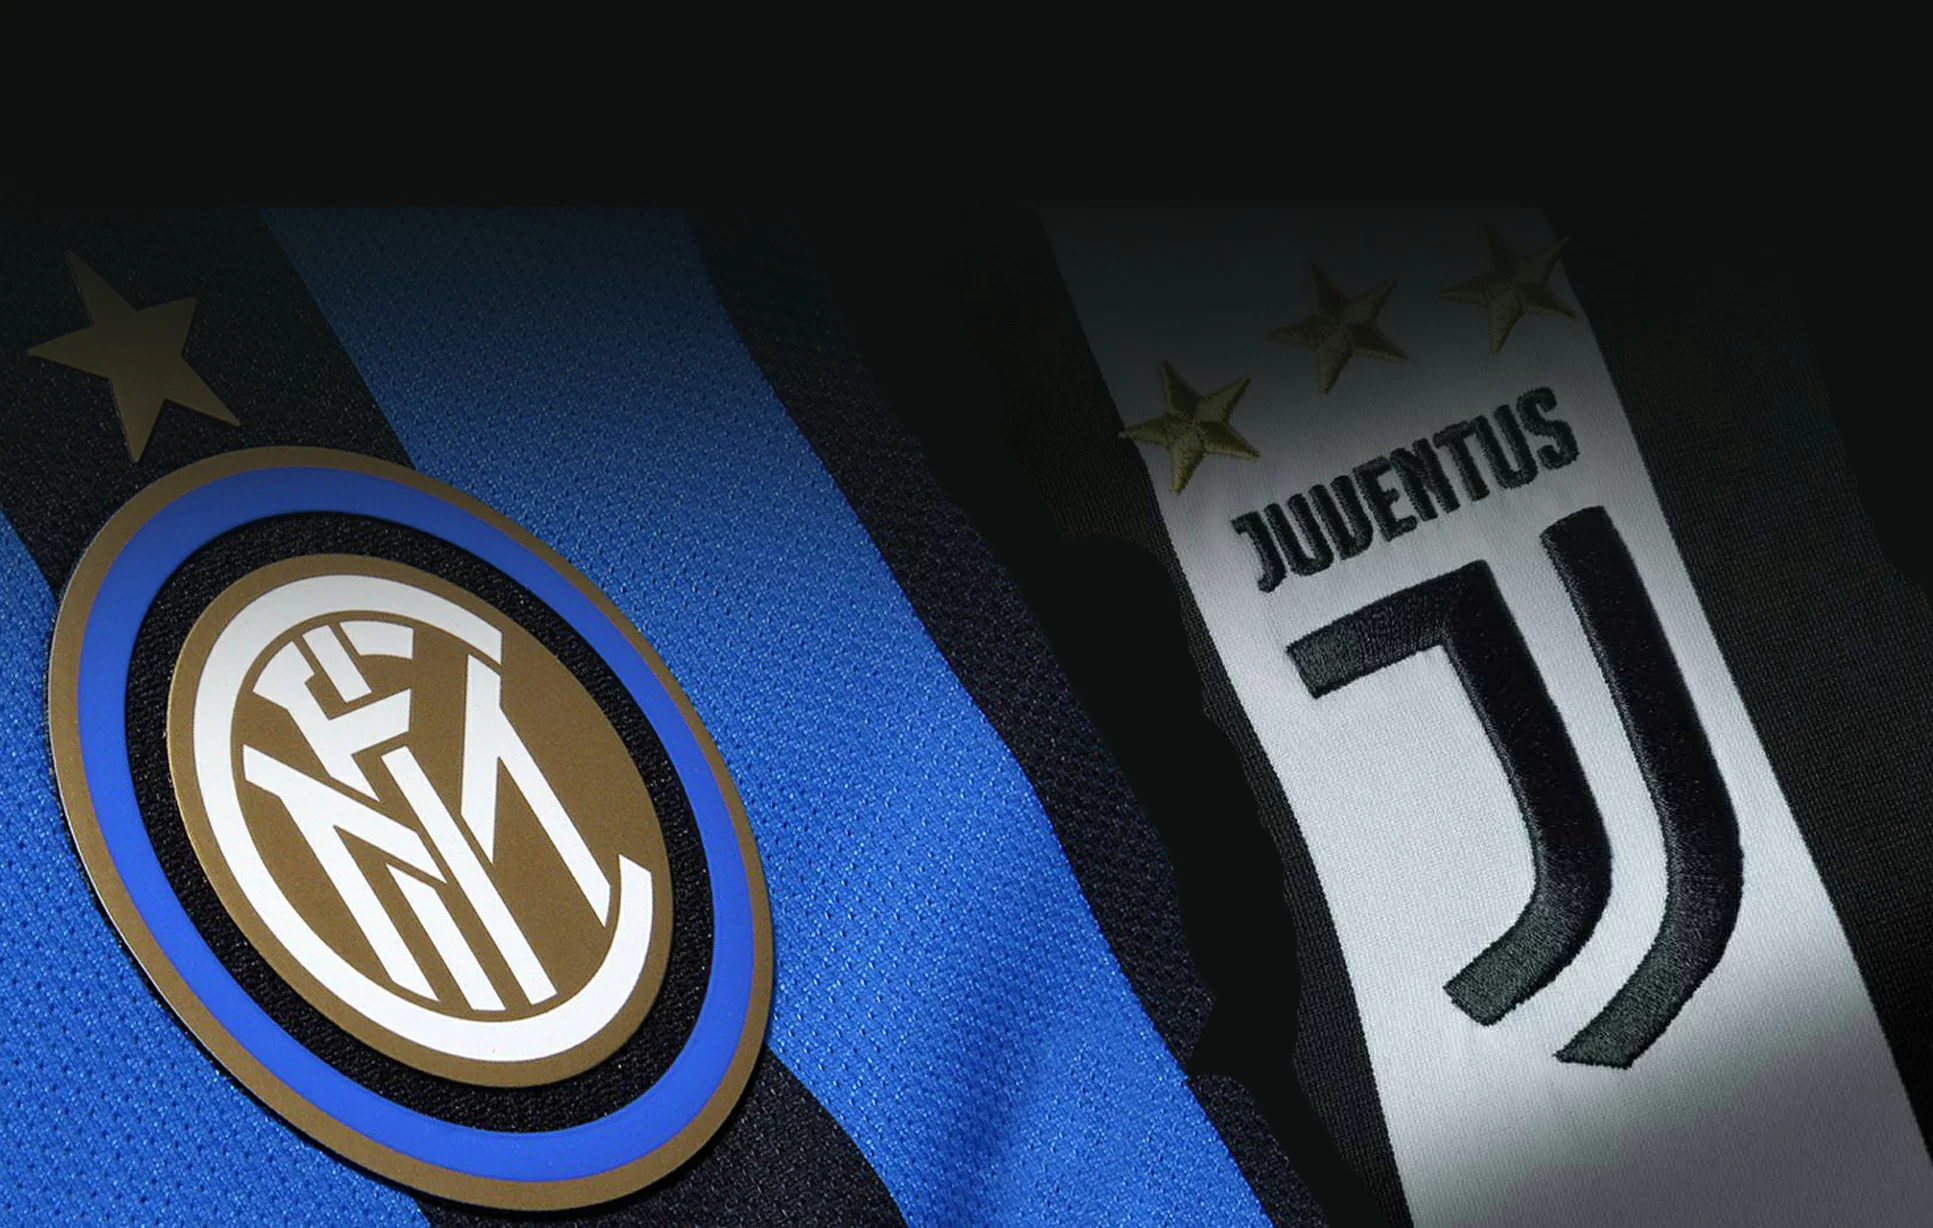 Juve contro Inter: sguardo al futuro?